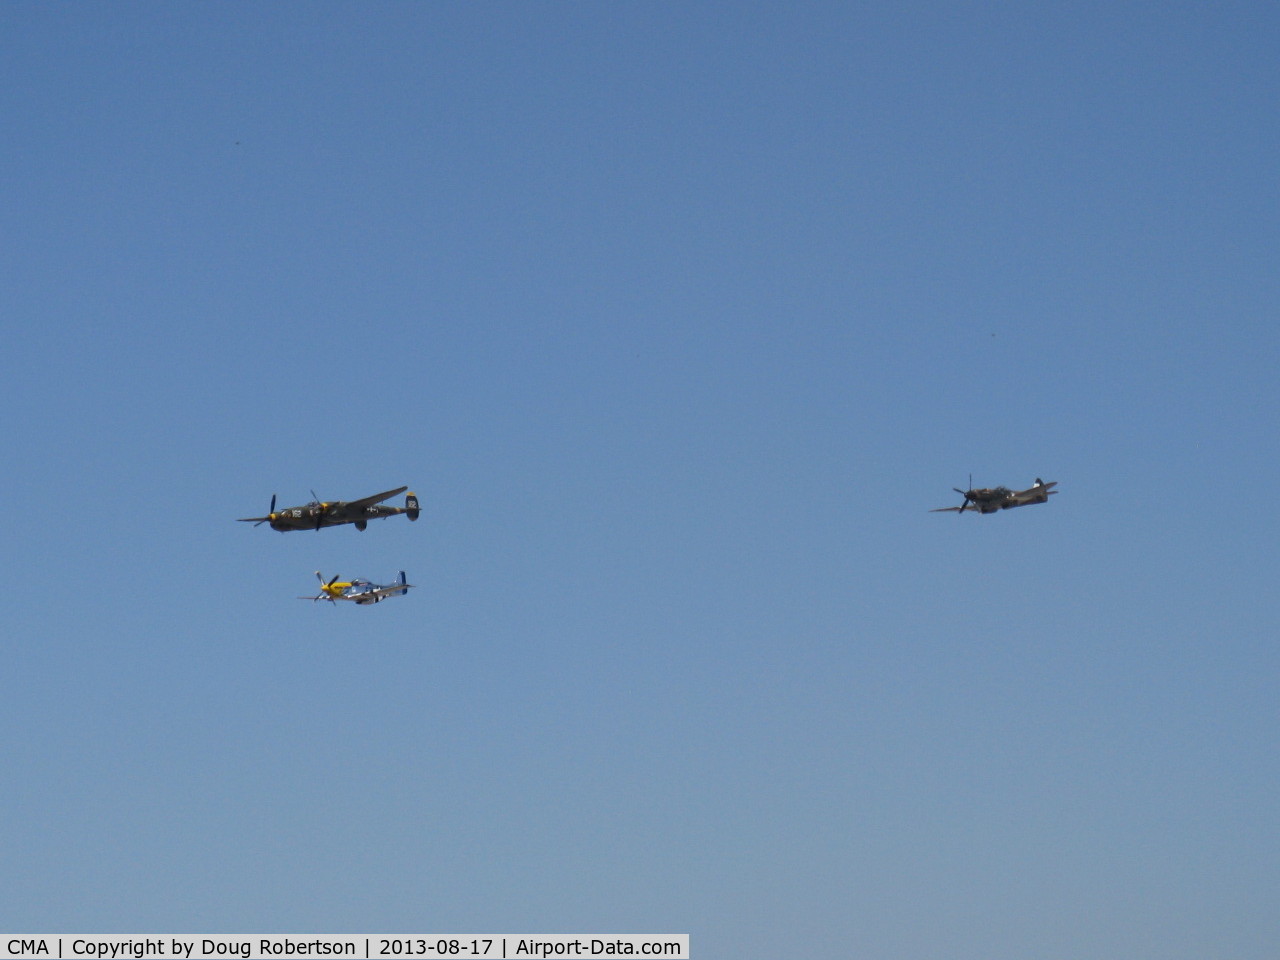 Camarillo Airport (CMA) - P-38 LIGHTNING, P-51 MUSTANG, SPITFIRE Flyover Rwy 26 at 2013 WINGS OVER CAMARILLO AIRSHOW